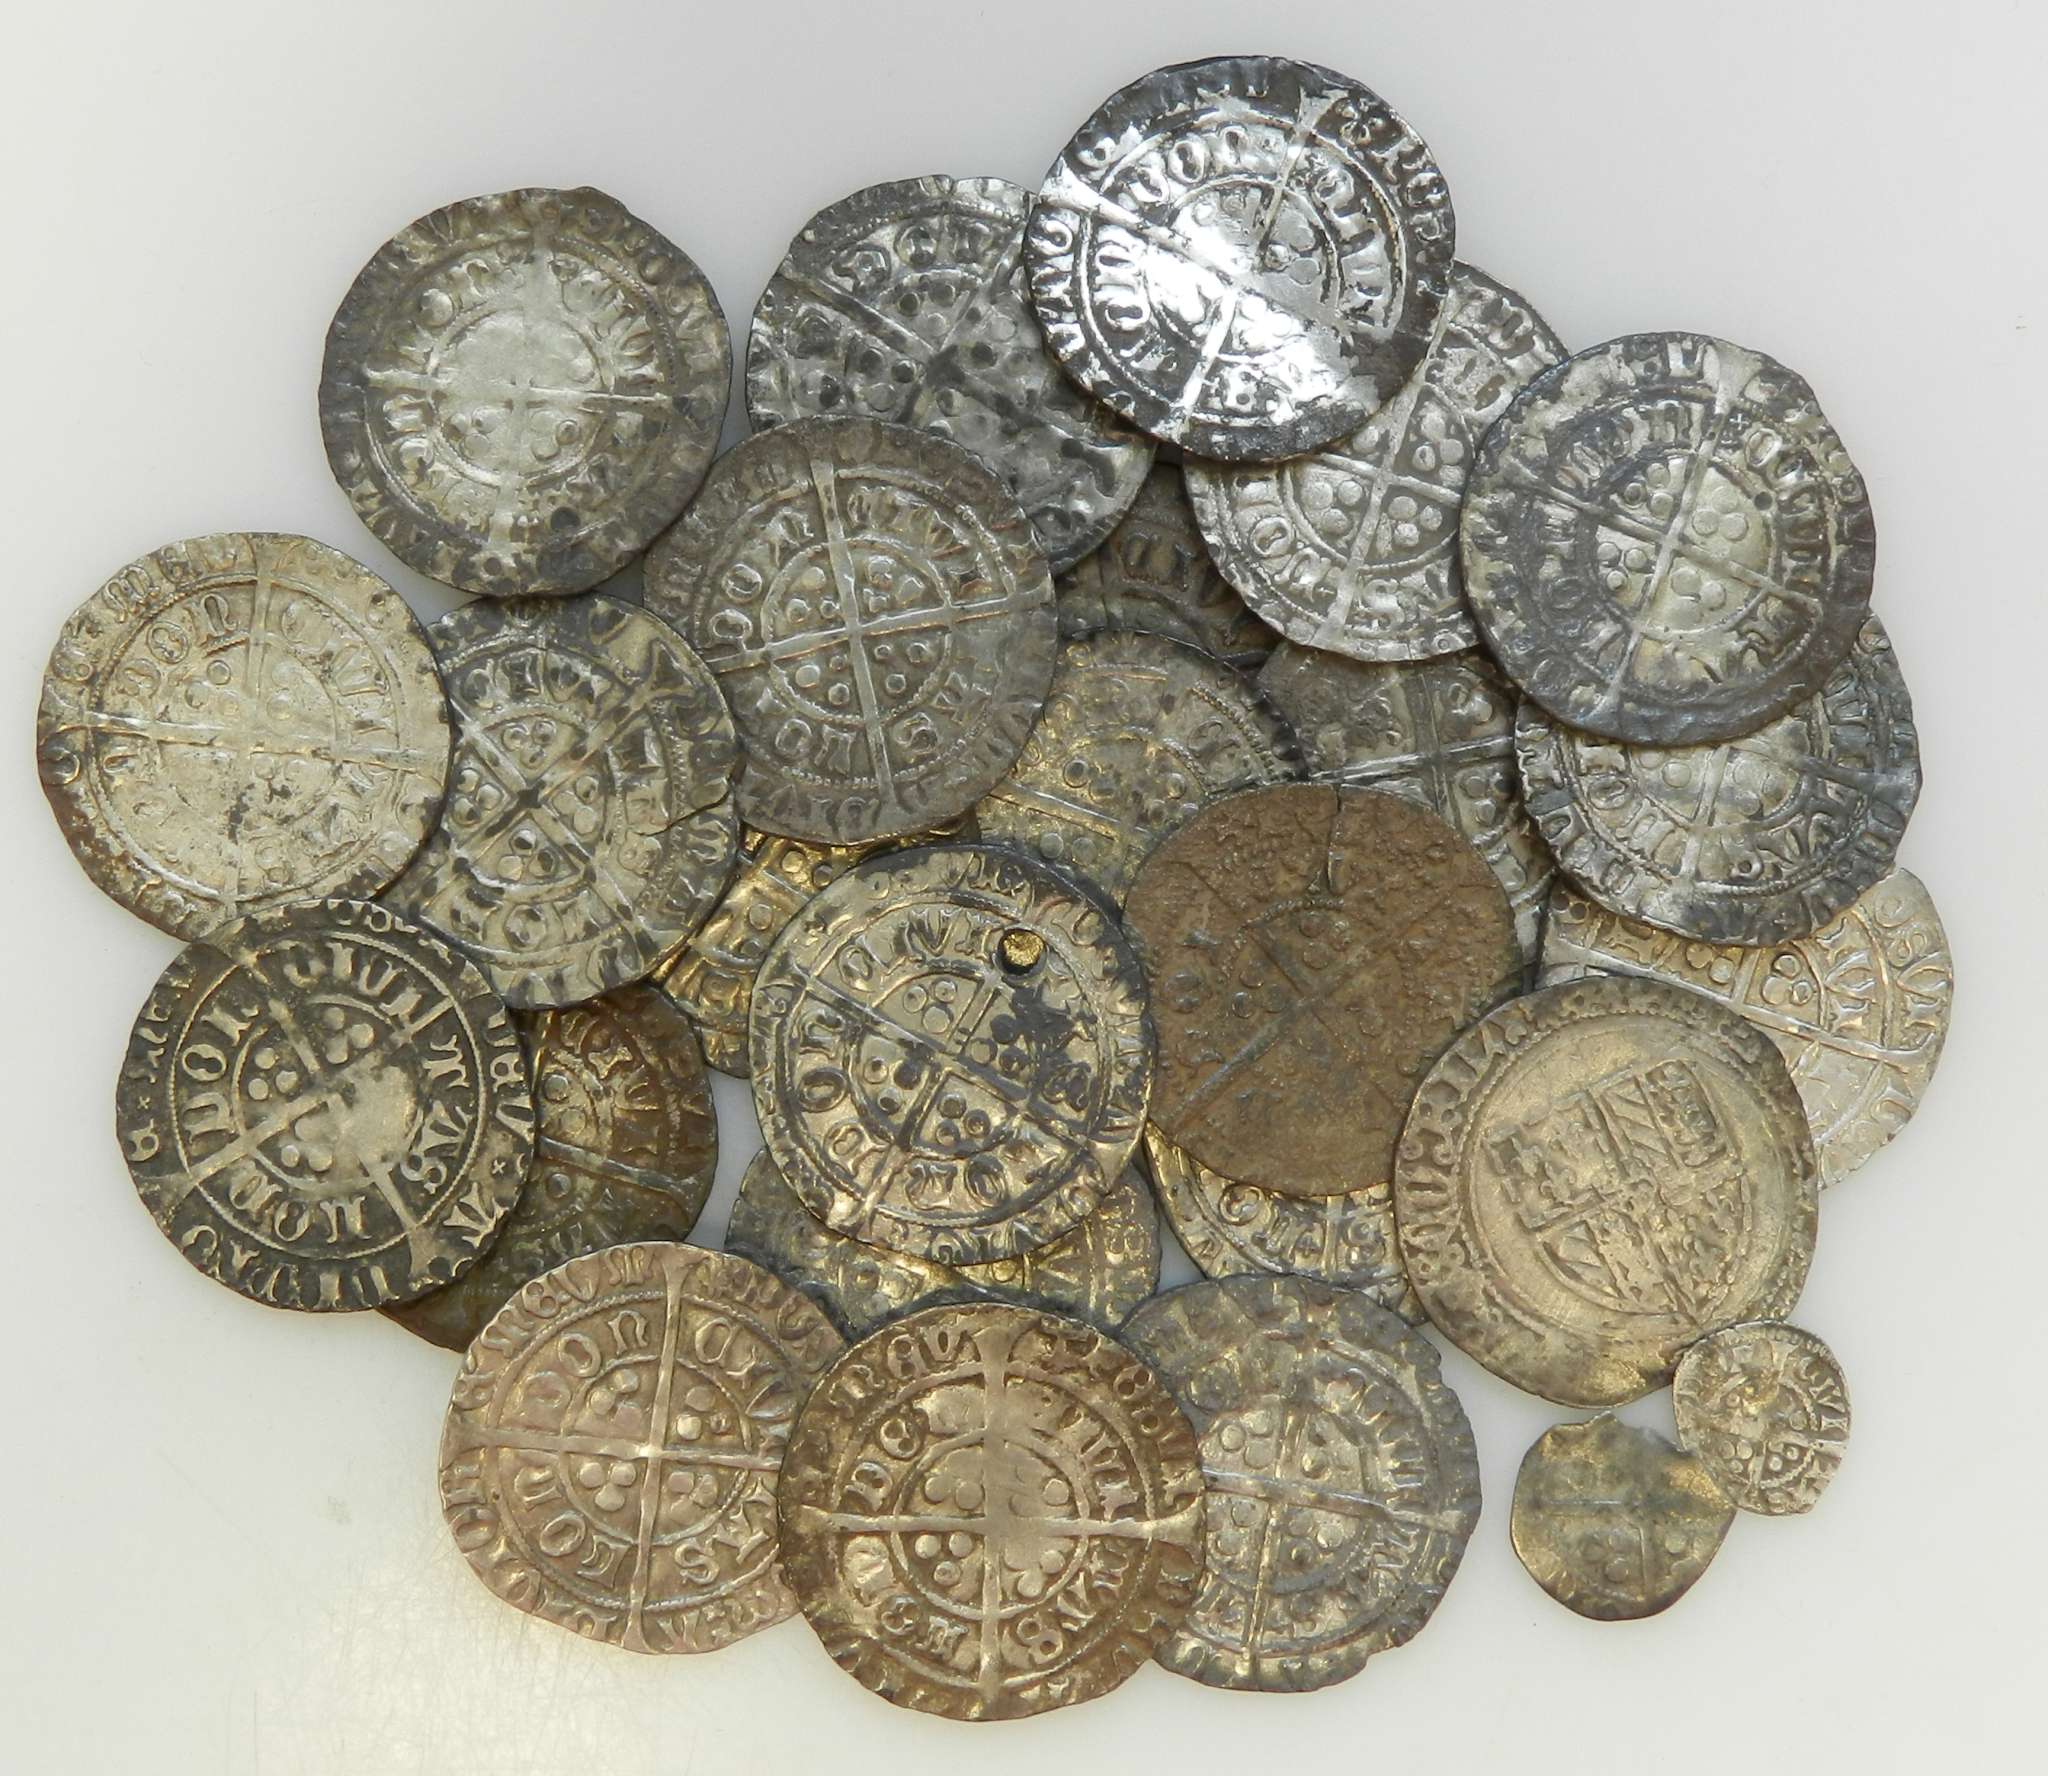 Detektorem kovů objevil unikátní středověký poklad kvalitních stříbrných mincí